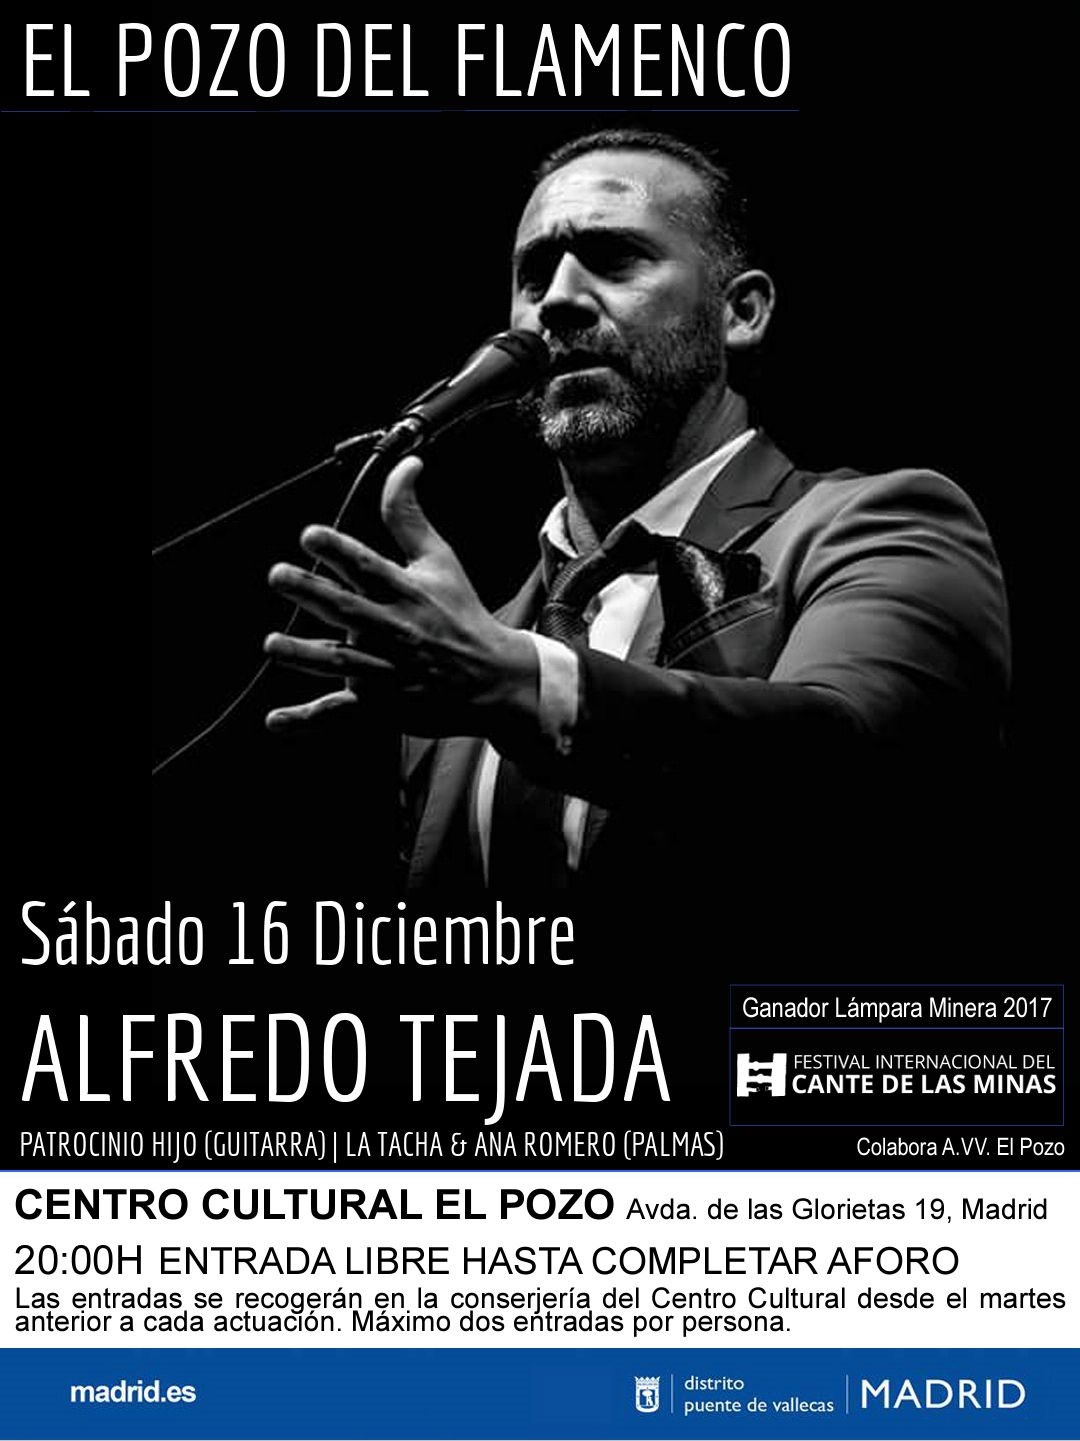 Alfredo Tejada - Flamenco en el Pozo